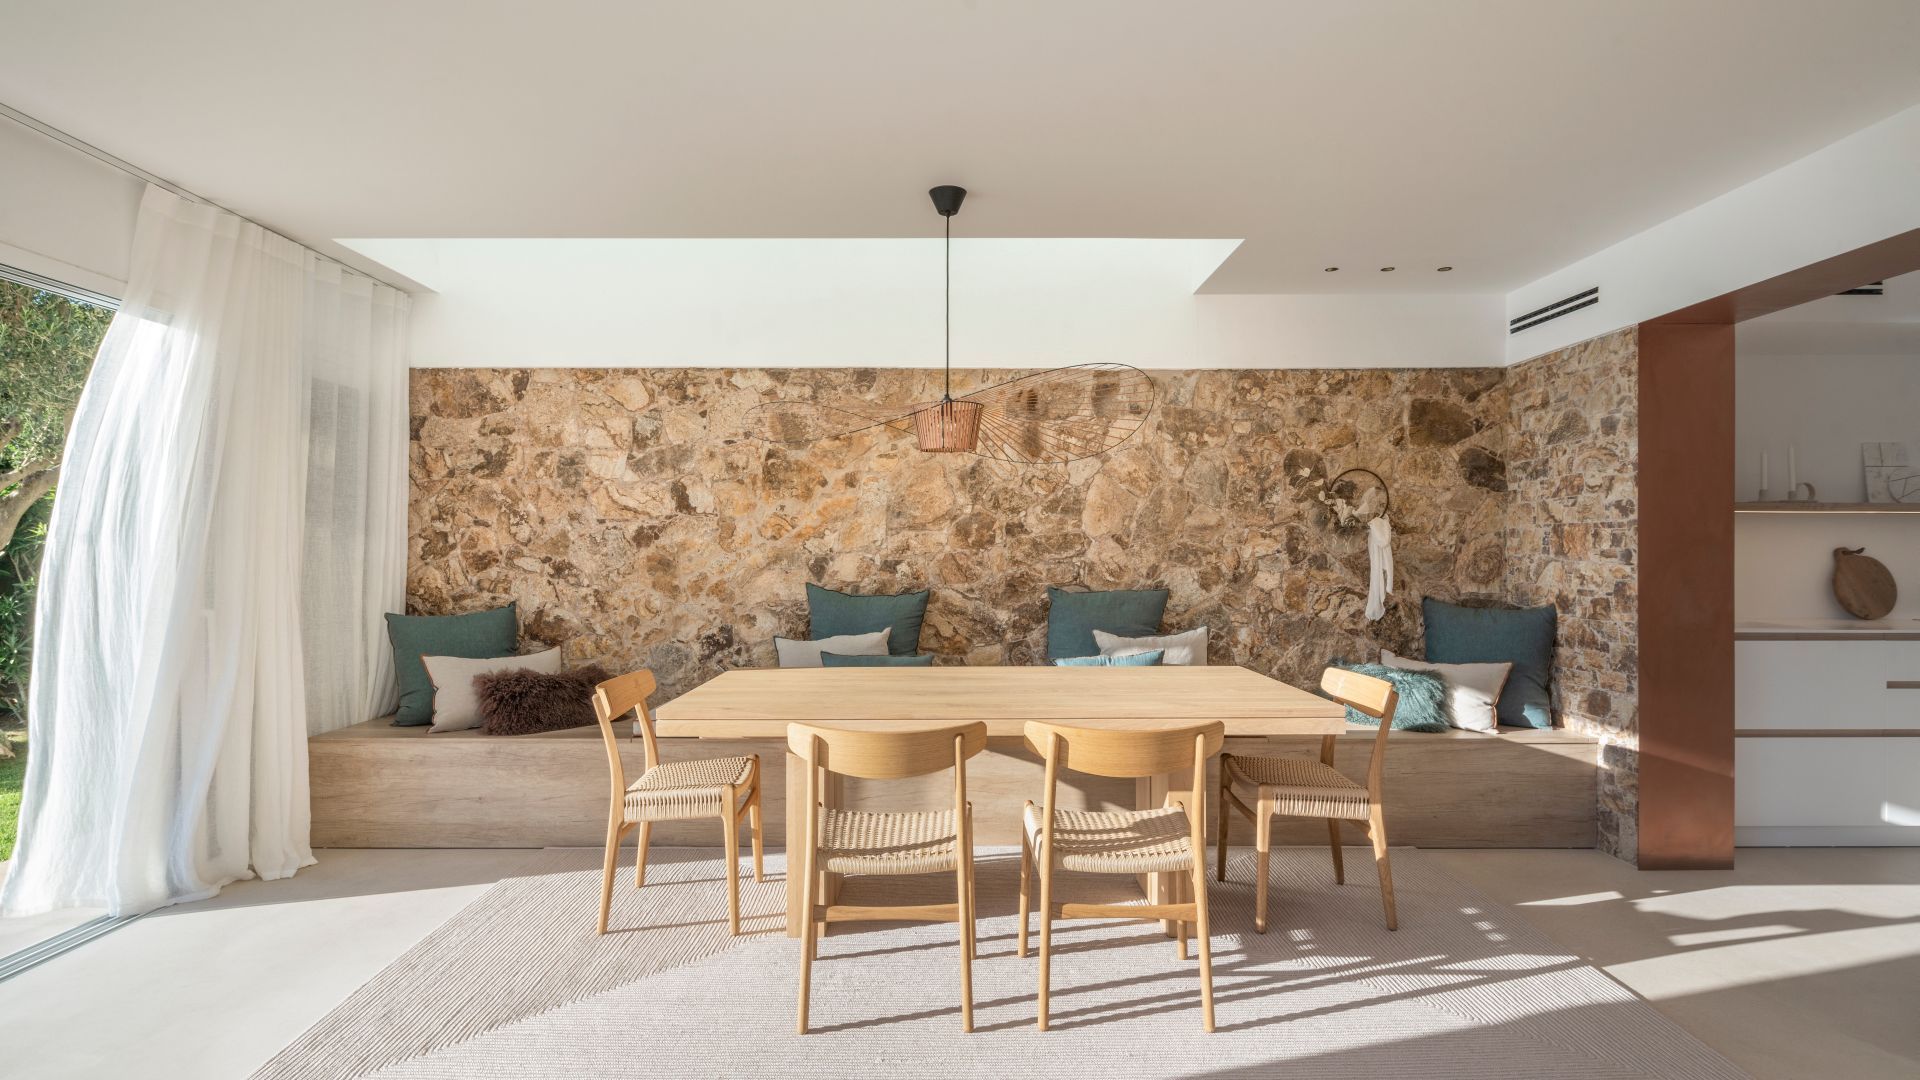 W projekcie wykorzystano biel i kolory ziemi. Naturalny dom w Hiszpanii. Projekt wnętrz: Susanna Cots Interior Design